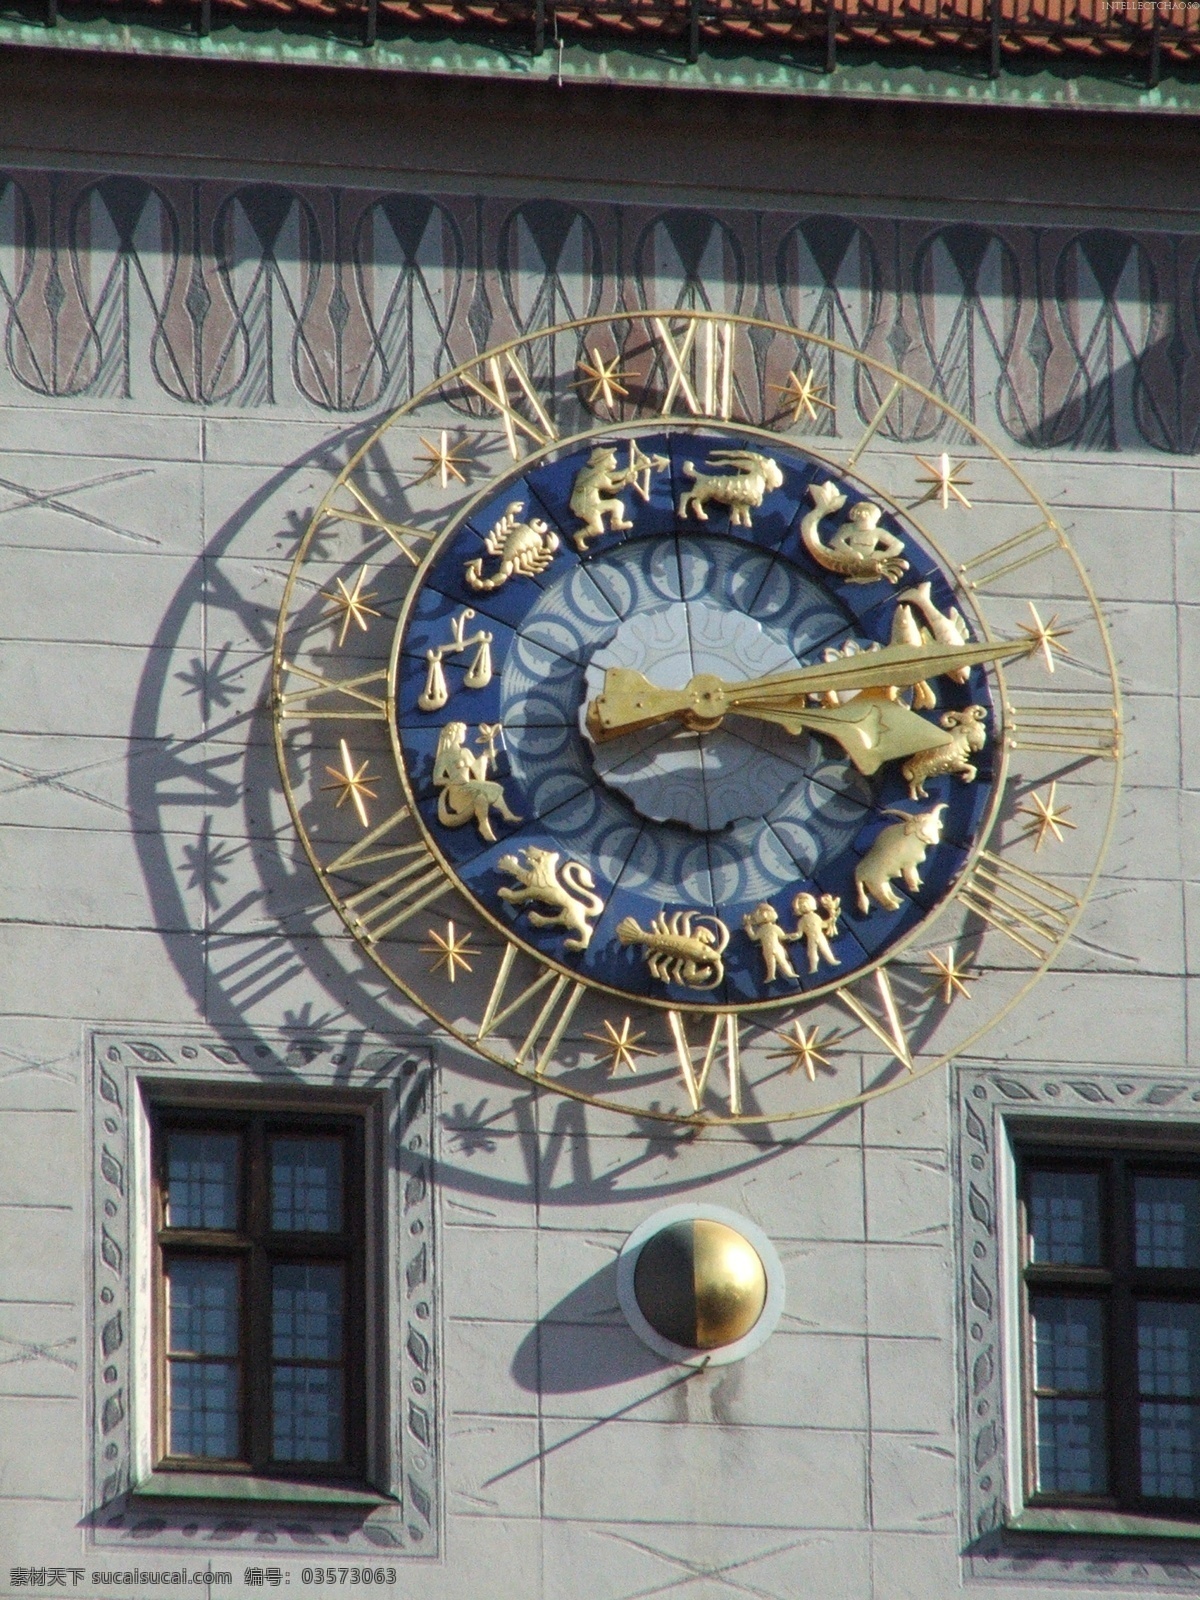 欧式 挂钟 高清 欧式大挂钟 时间 古式 钟摆 铁花 钟表 闹钟 计时 木质 生活素材 生活百科 欧式钟表 家居生活